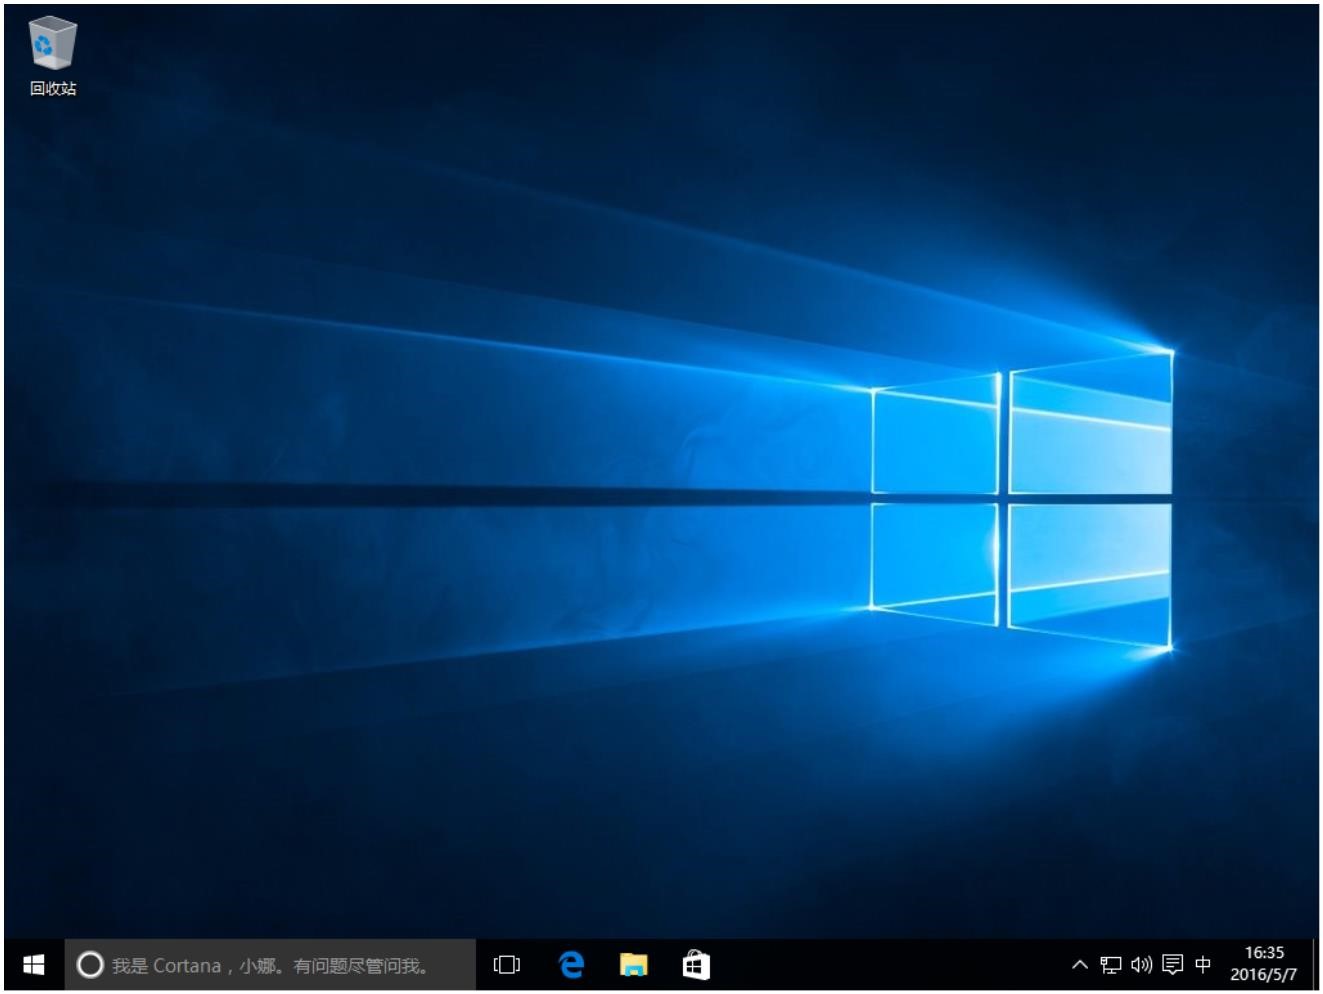 Windows10用户手册 - Windows 10 安装与激活 - 全新安装